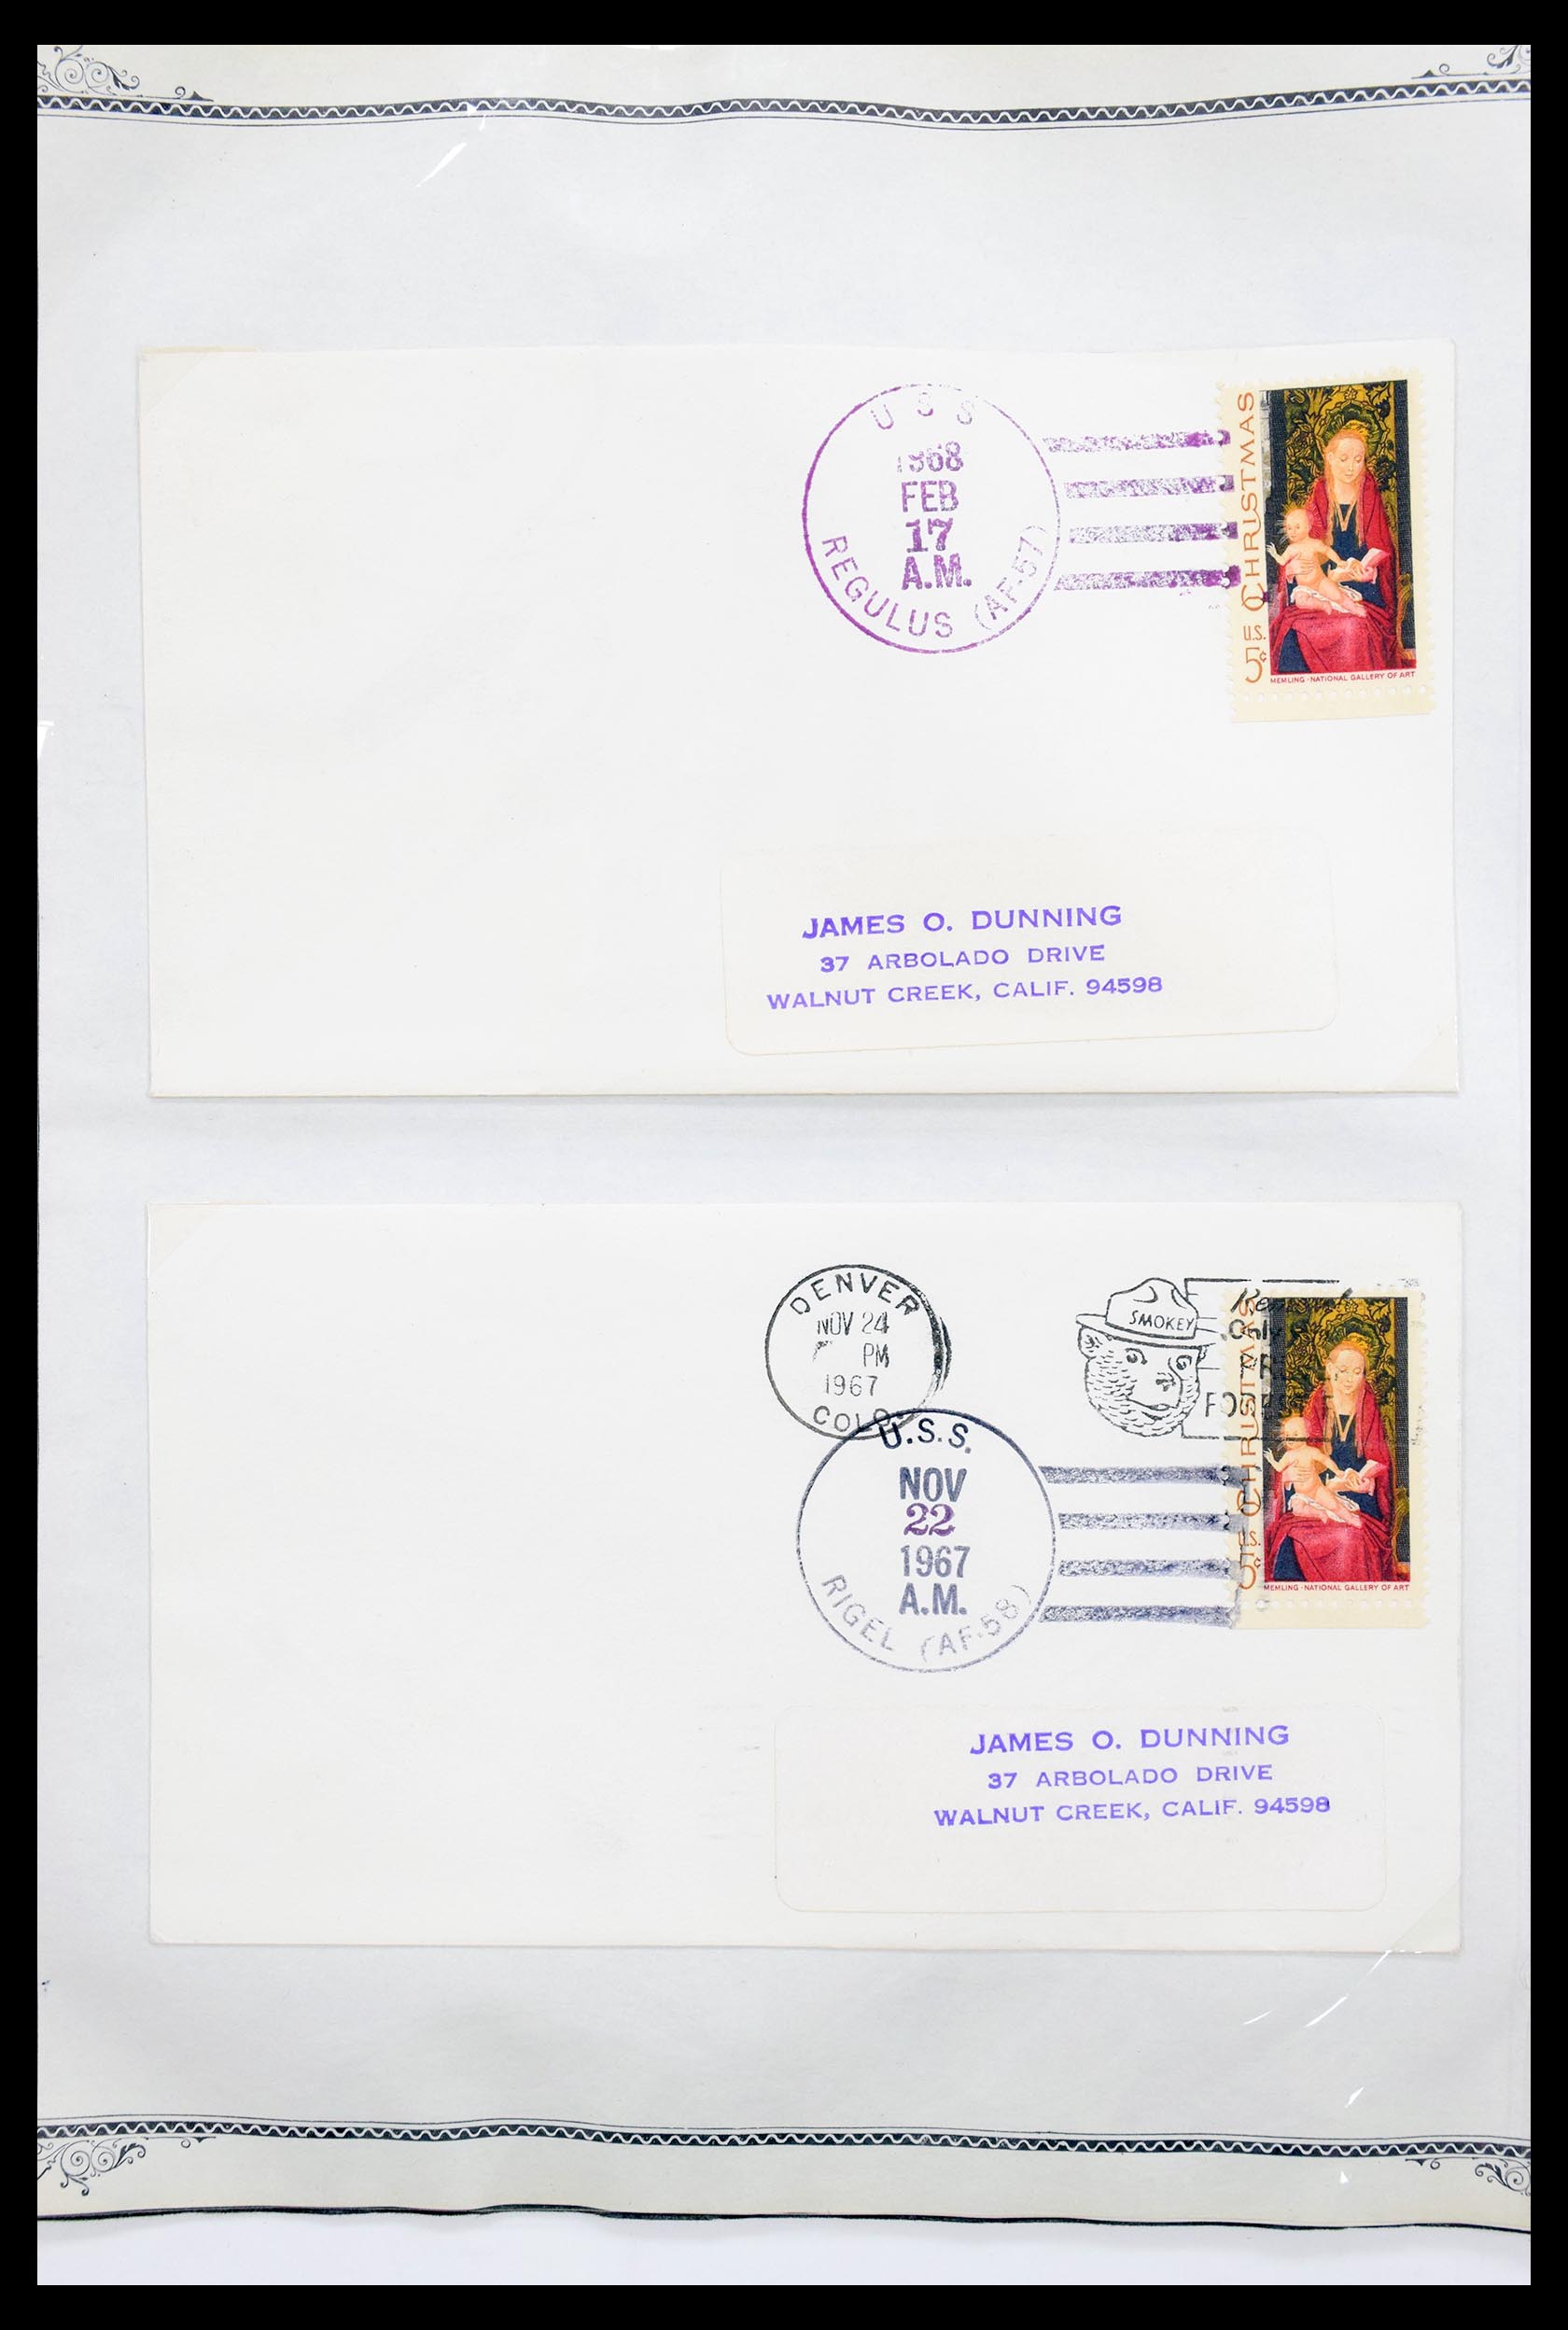 30341 029 - 30341 USA scheepspost brieven 1930-1970.